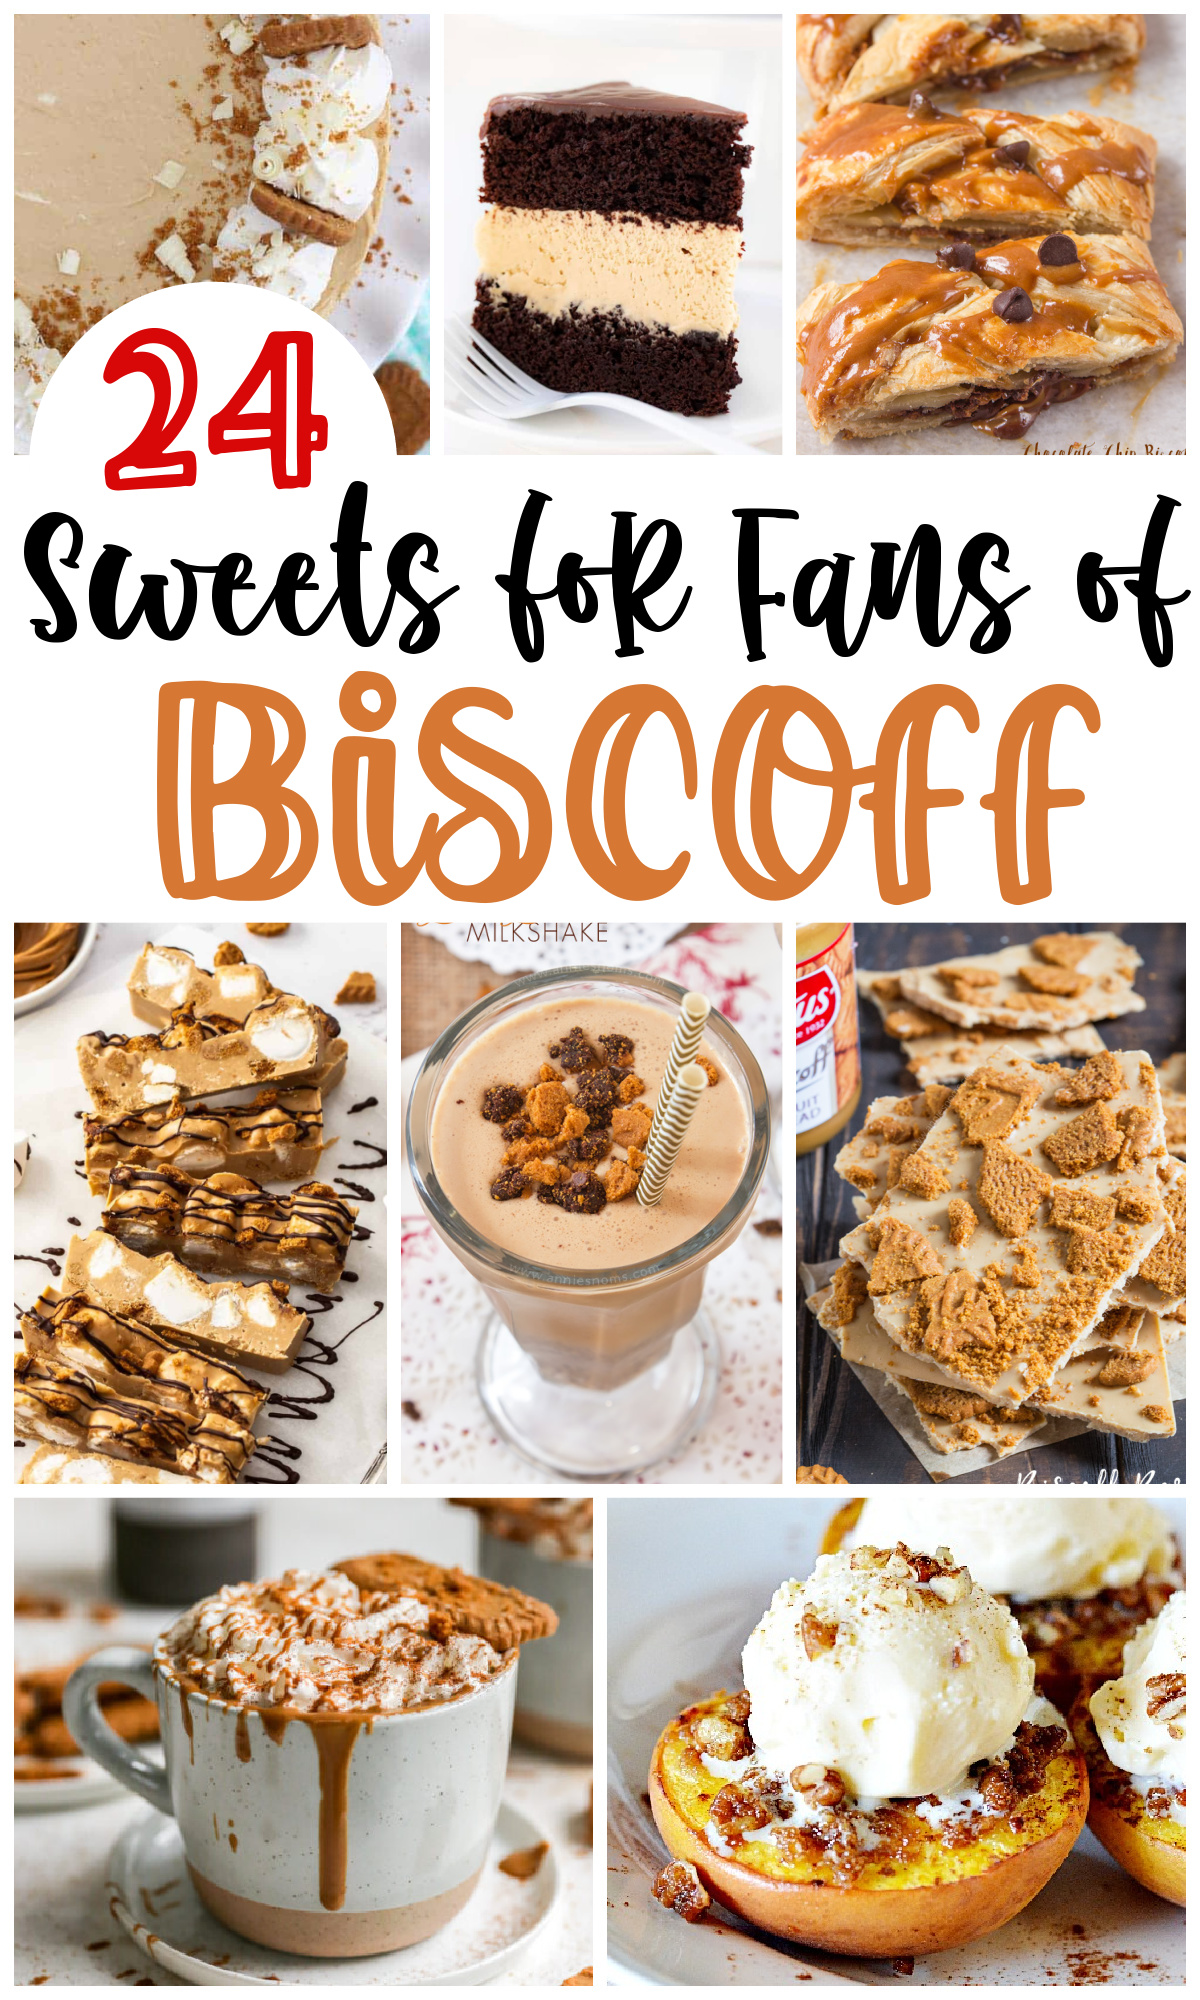 24 Sweet Biscoff Dessert Recipes